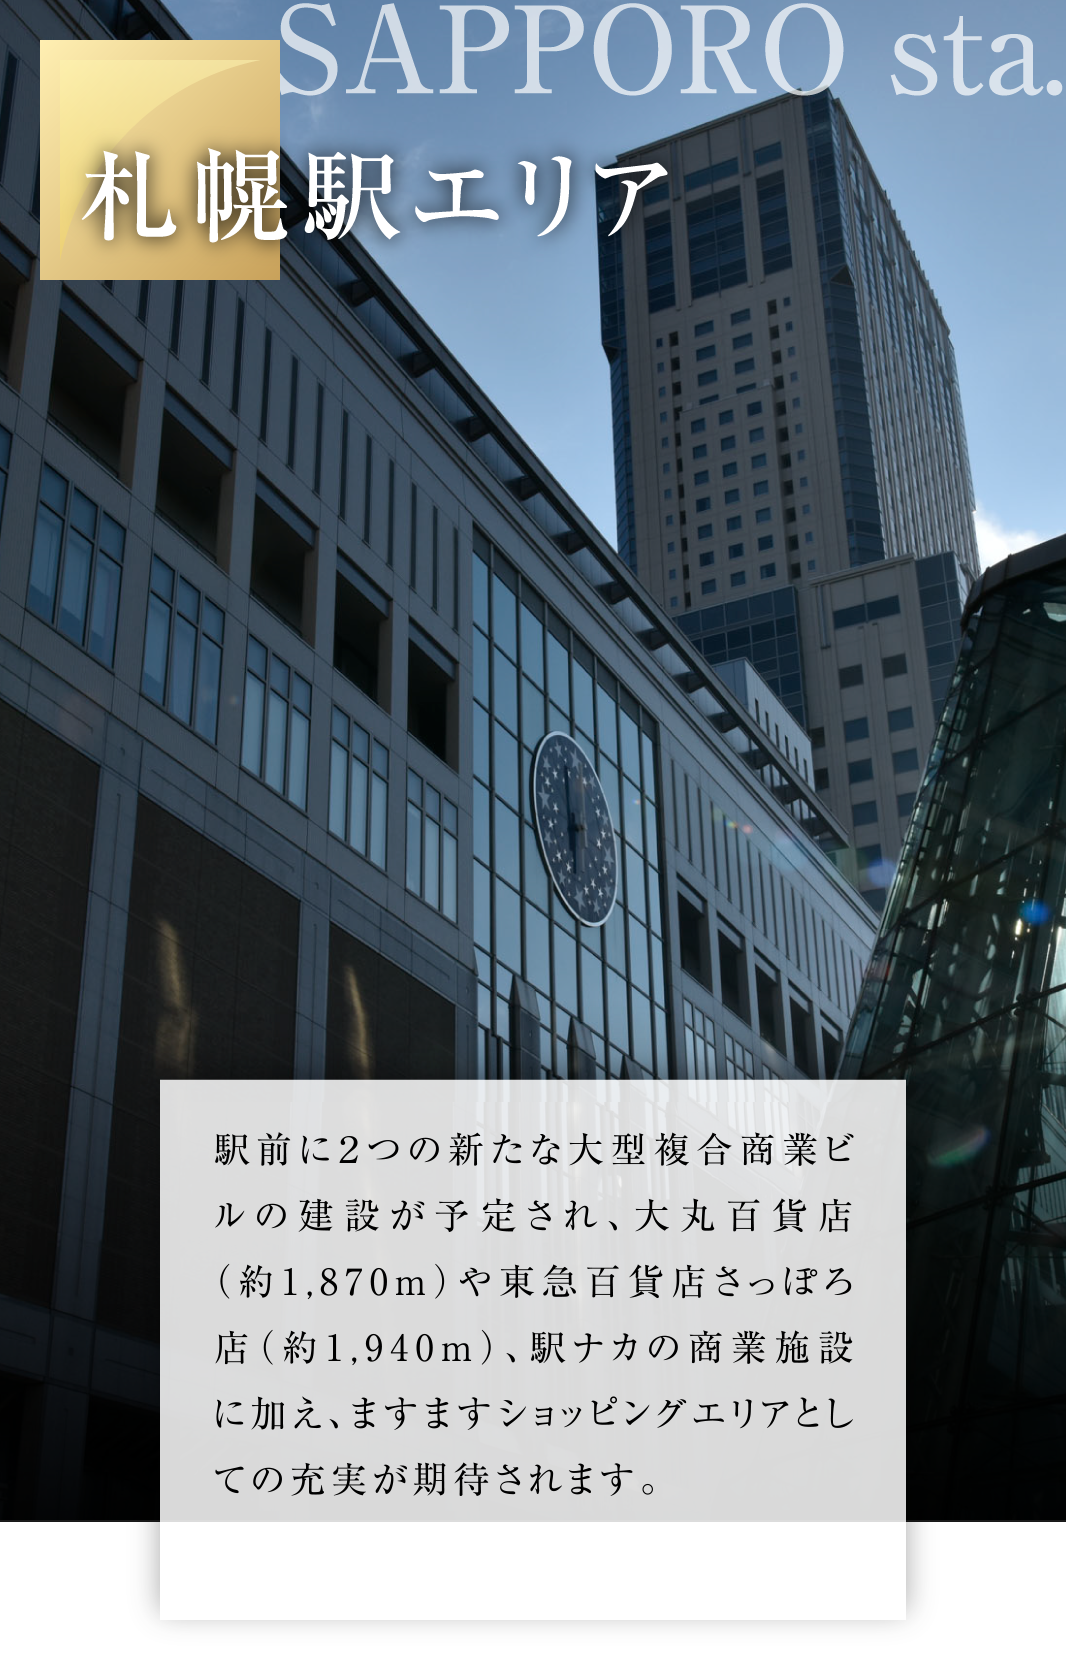 札幌駅エリア
駅前に２つの新たな大型複合商業ビルの建設が予定され、大丸百貨店（約1,870ｍ）や東急百貨店さっぽろ店（約1,940ｍ）、駅ナカの商業施設に加え、ますますショッピングエリアとしての充実が期待されます。